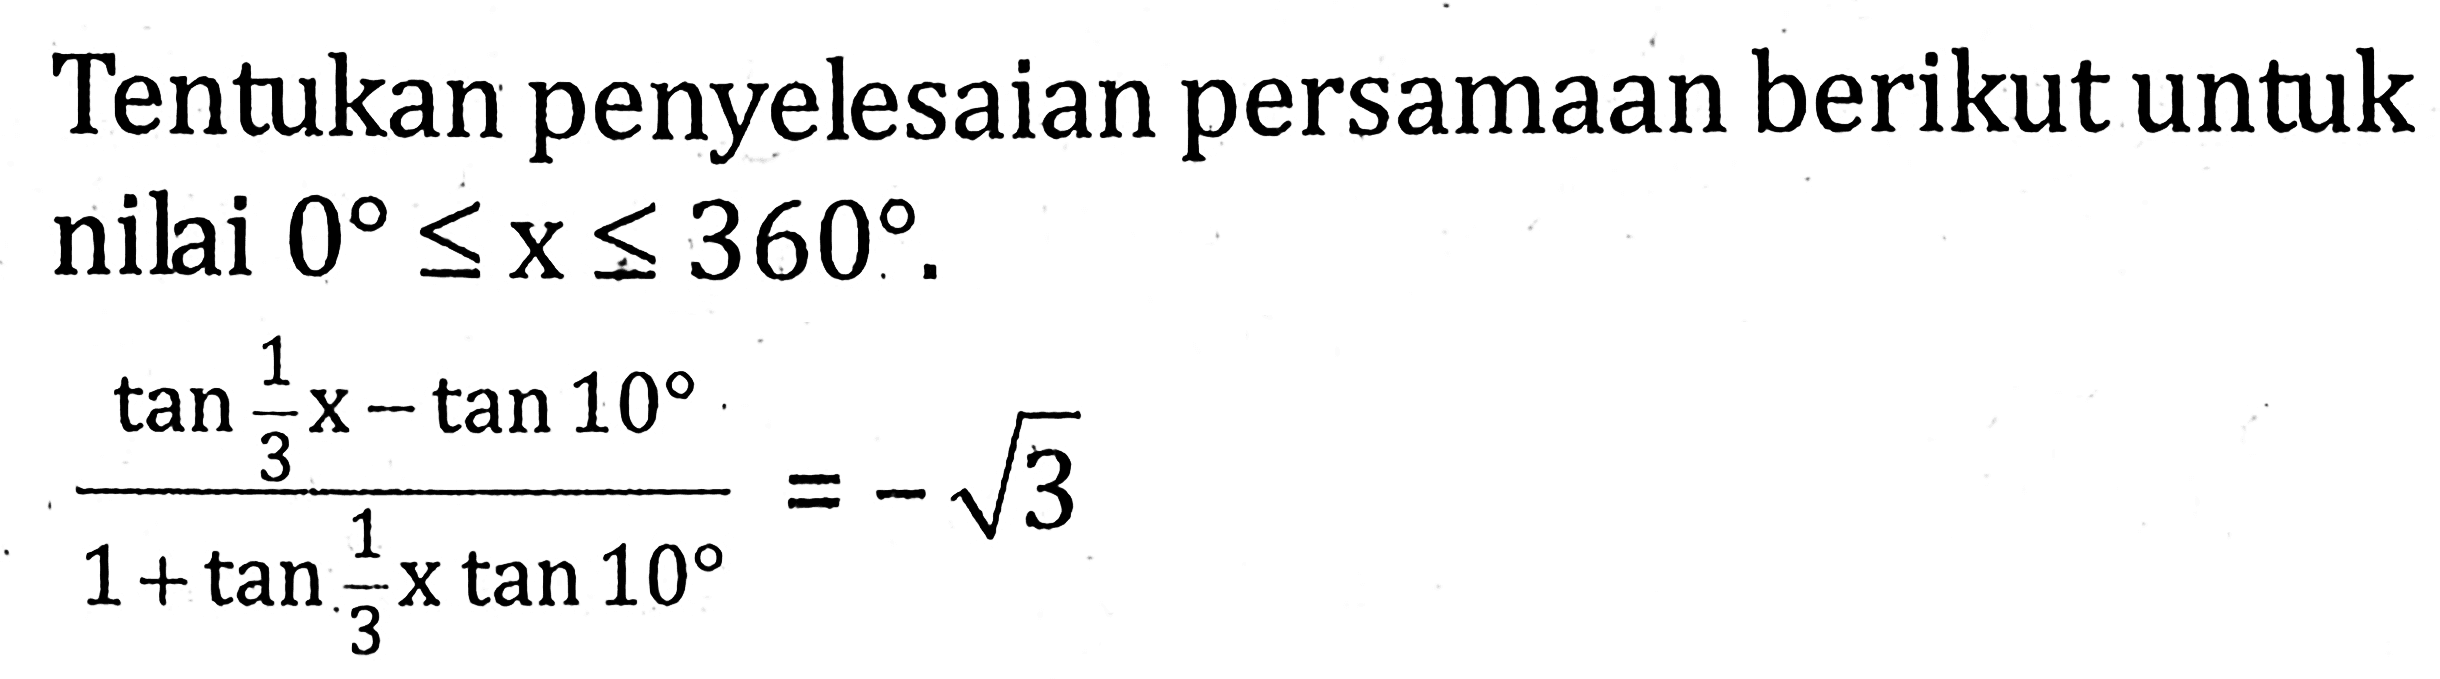 Tentukan penyelesaian persamaan berikut untuk nilai 0<=x<=360. (tan(1/3x)-tan 10)/(1+tan(1/3x)tan 10)=-akar(3)